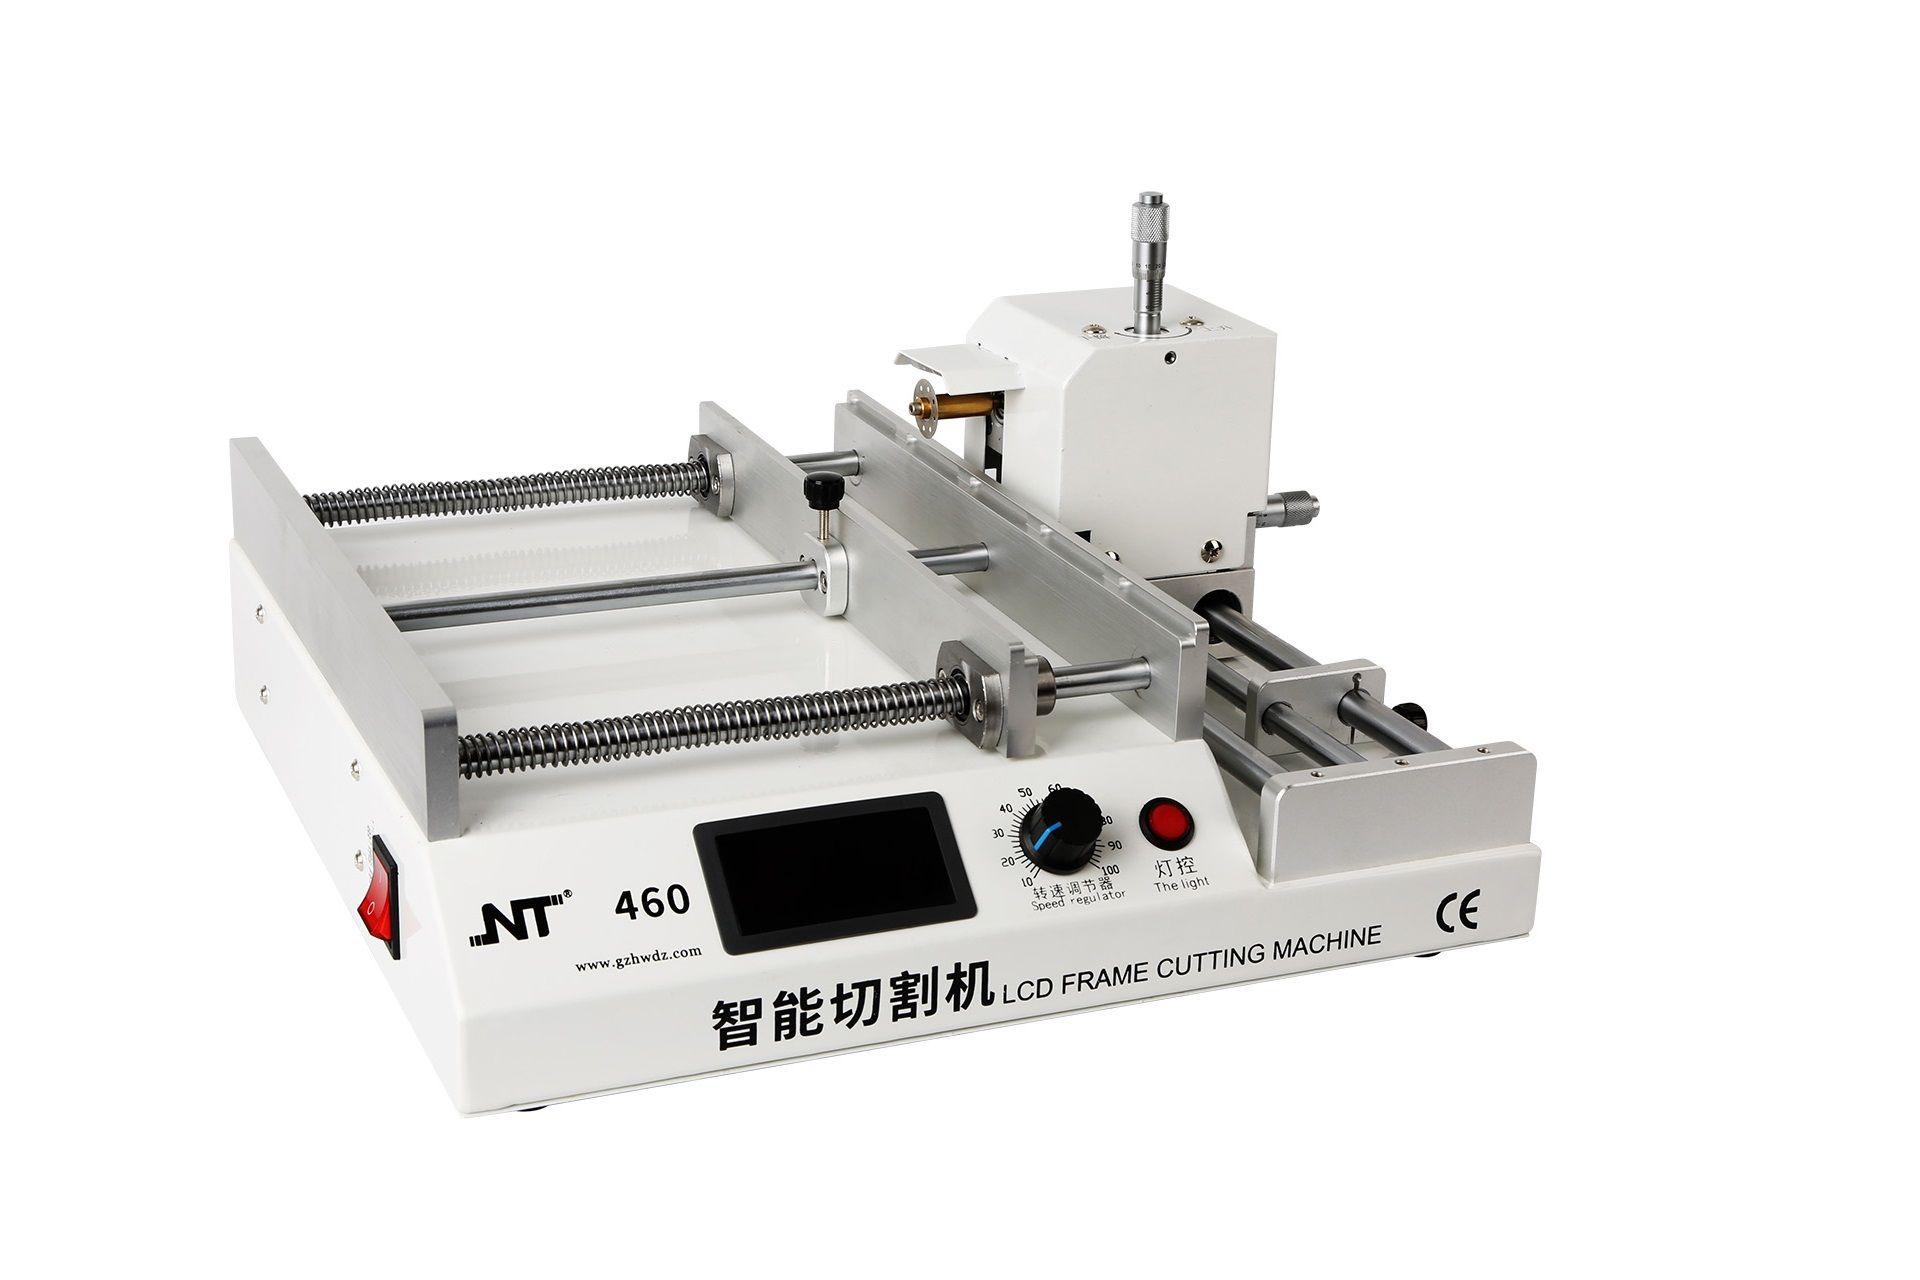 Screen Frame Cutting Machine NT-460